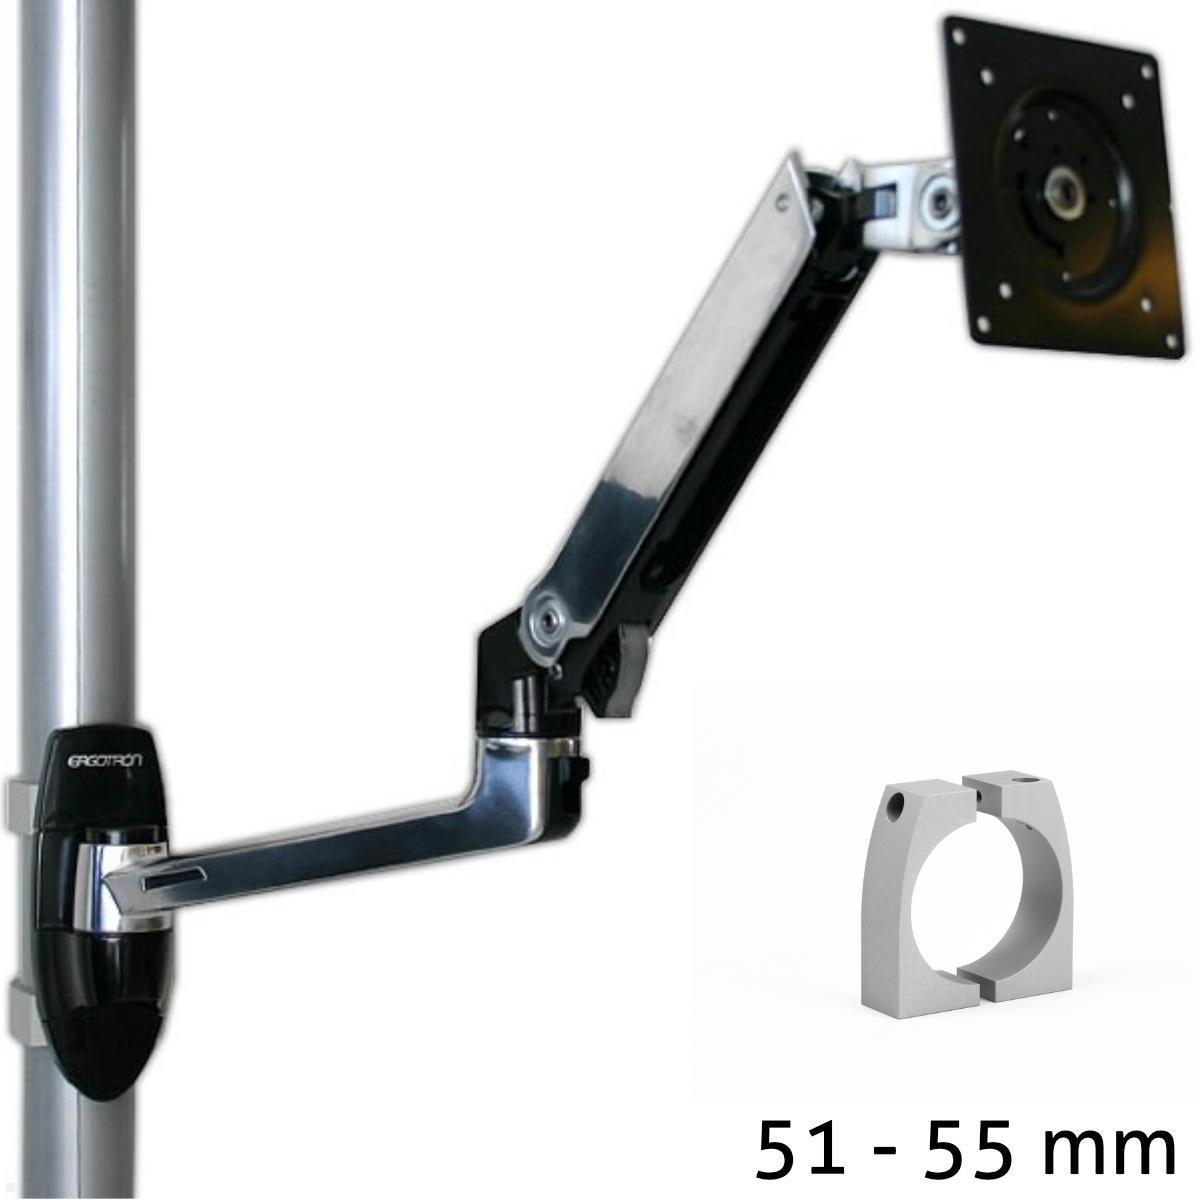 Ergotron LX Arm Monitorhalterung f?r Rohre / S?ulen 51-55 mm, silber von Ergotron